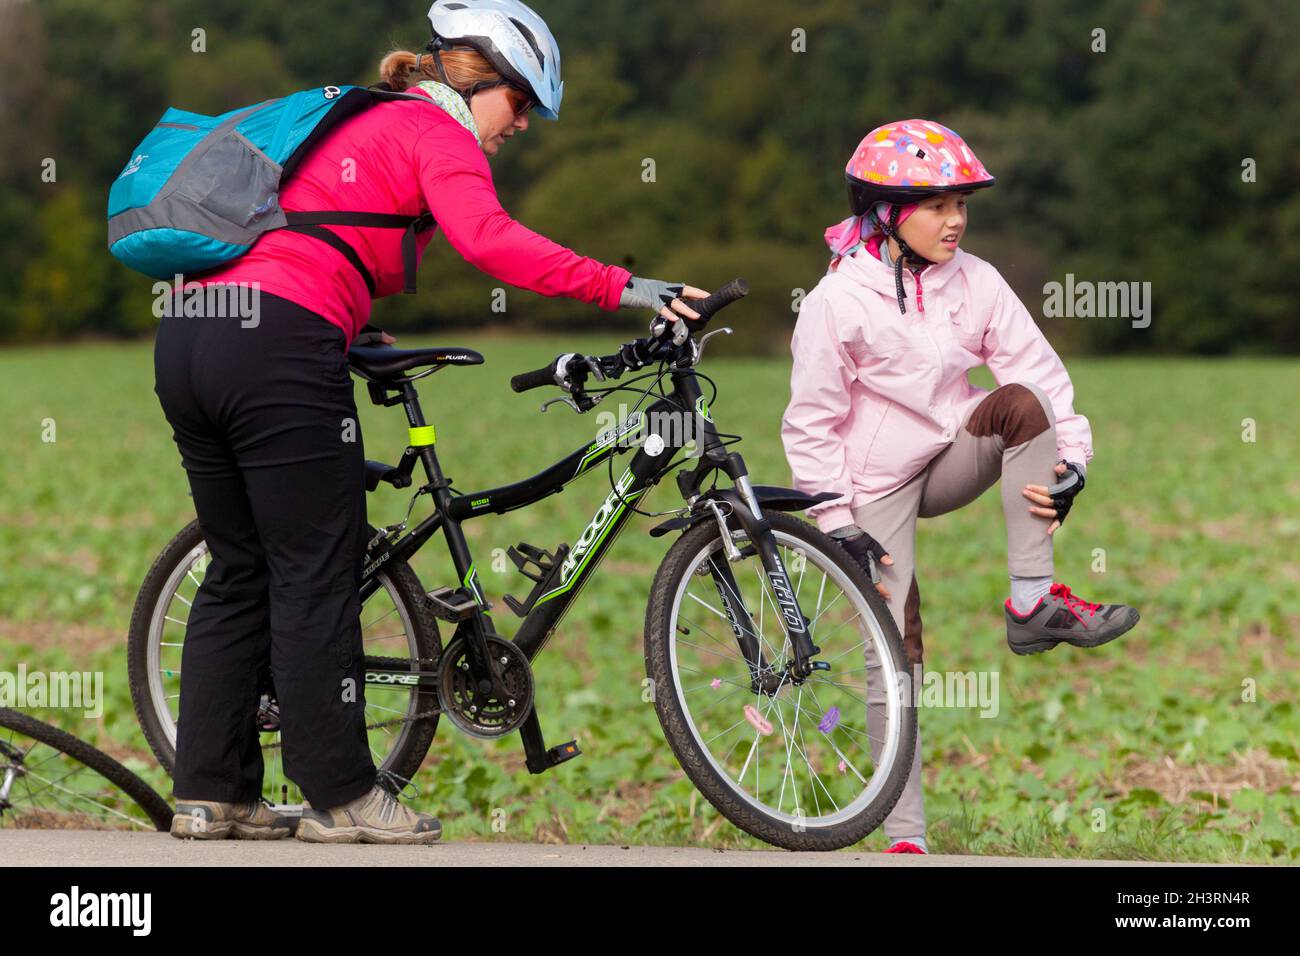 Enfant après avoir chuté du vélo, une fille avec un casque de vélo est en train de se cogner son genou Banque D'Images